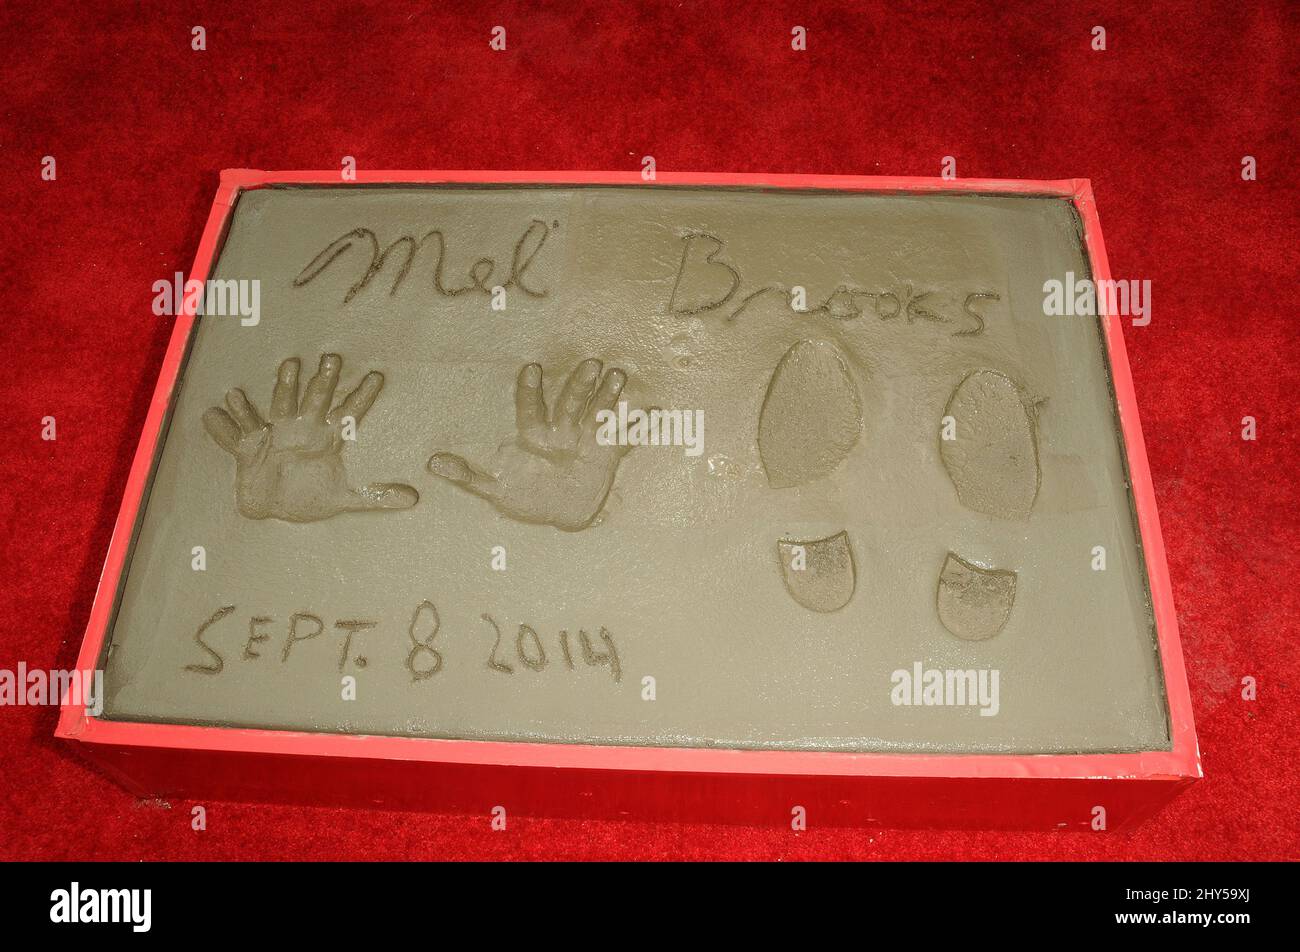 Mel Brooks während einer Zeremonie zu Ehren von Mel Brooks mit seinen Handprints und Footprints in Cement im weltberühmten TCL Chinese Theatre, am 8. September 2014, in Los Angeles. Stockfoto